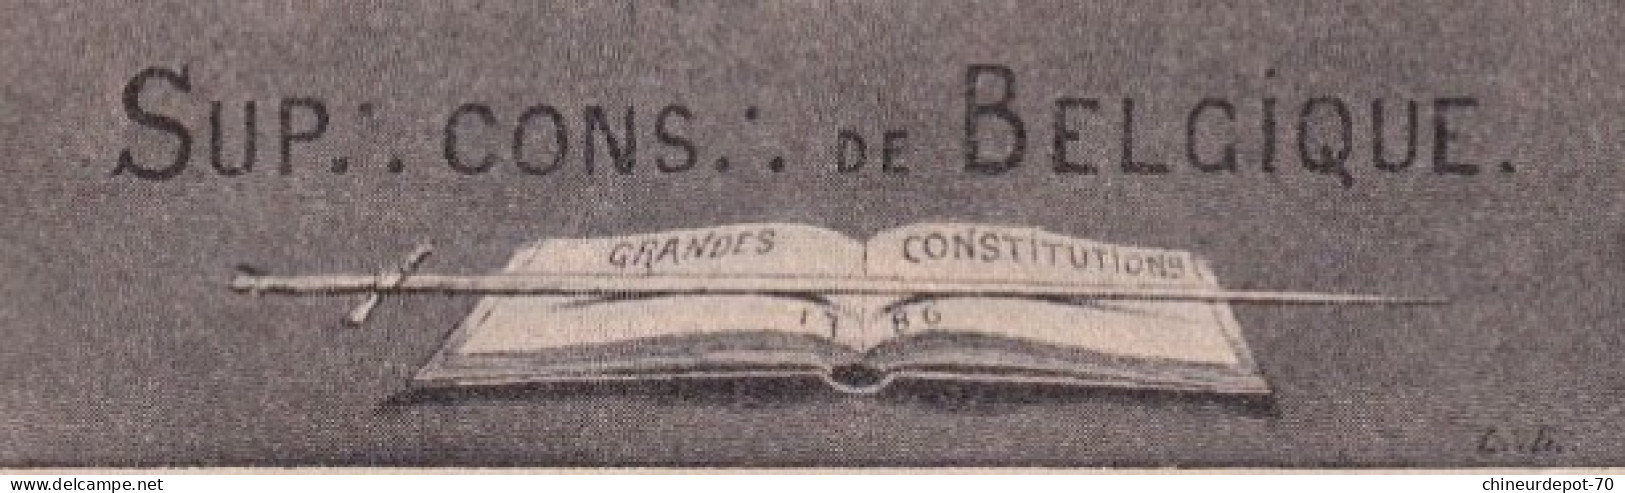 CONFERENCE INTERNATIONALE D DE 1907 SUP CONS DE BELGIQUE GRANDES CONSTITUTIONS - Institutions Internationales